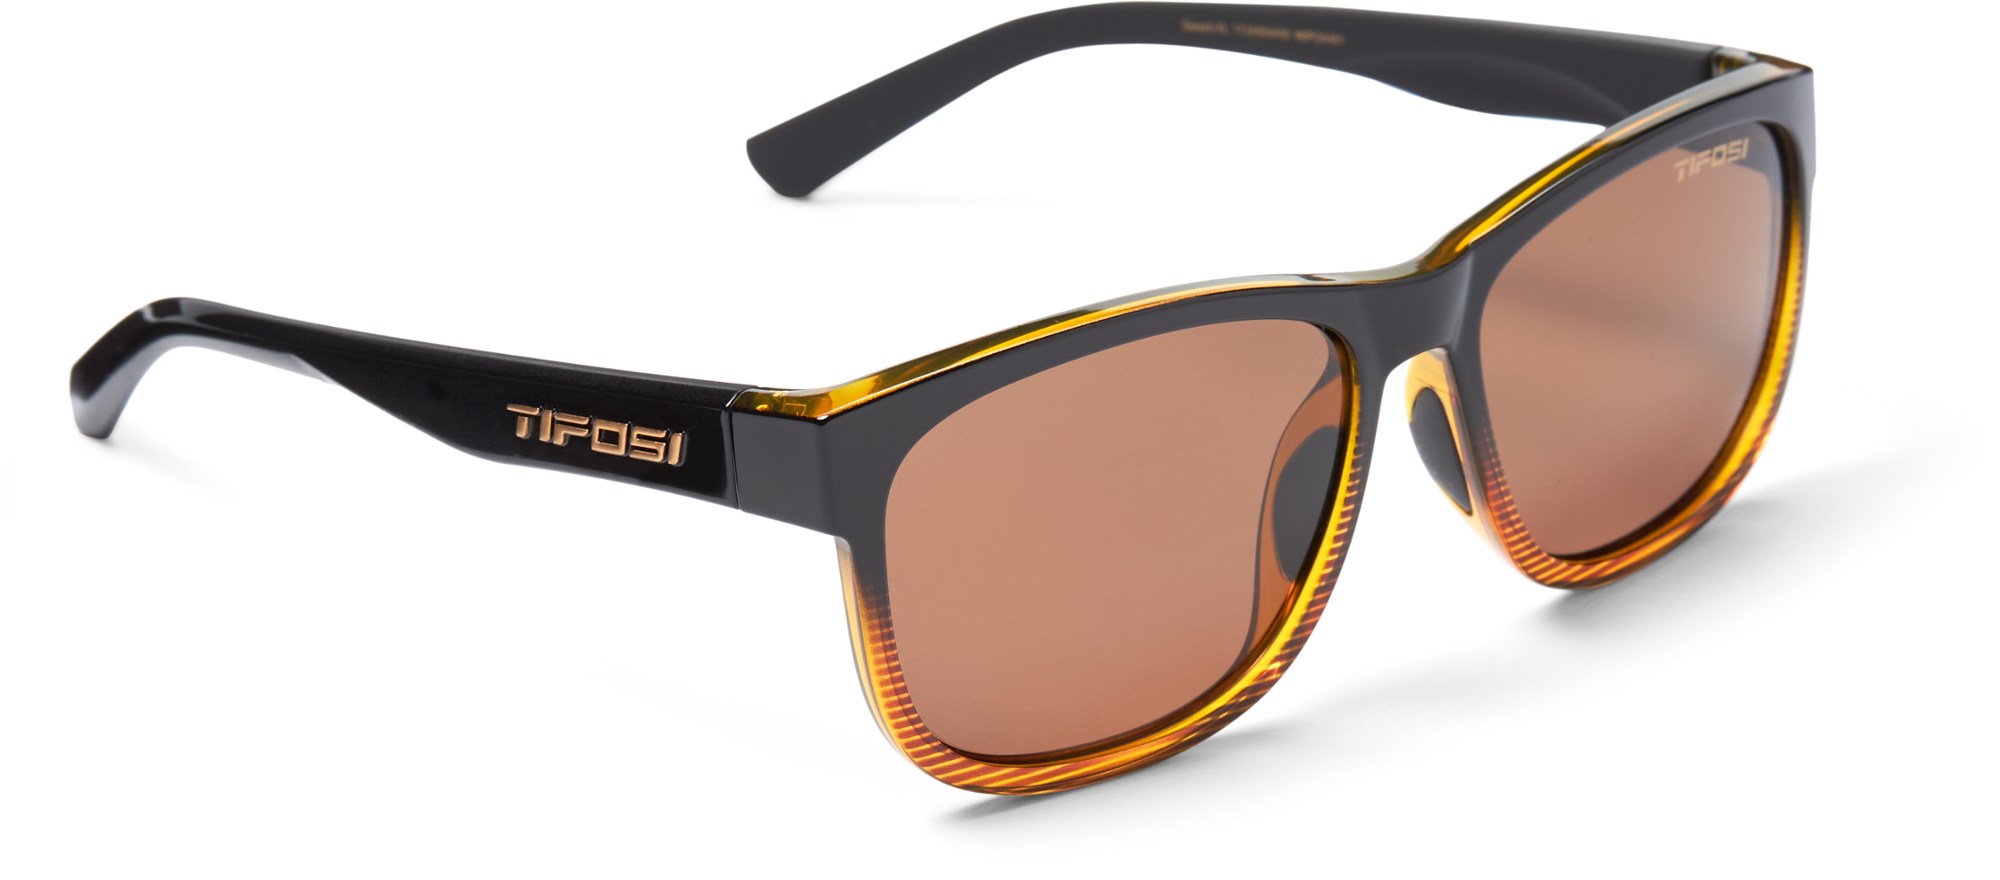 Поляризованные солнцезащитные очки Swank XL Tifosi, коричневый